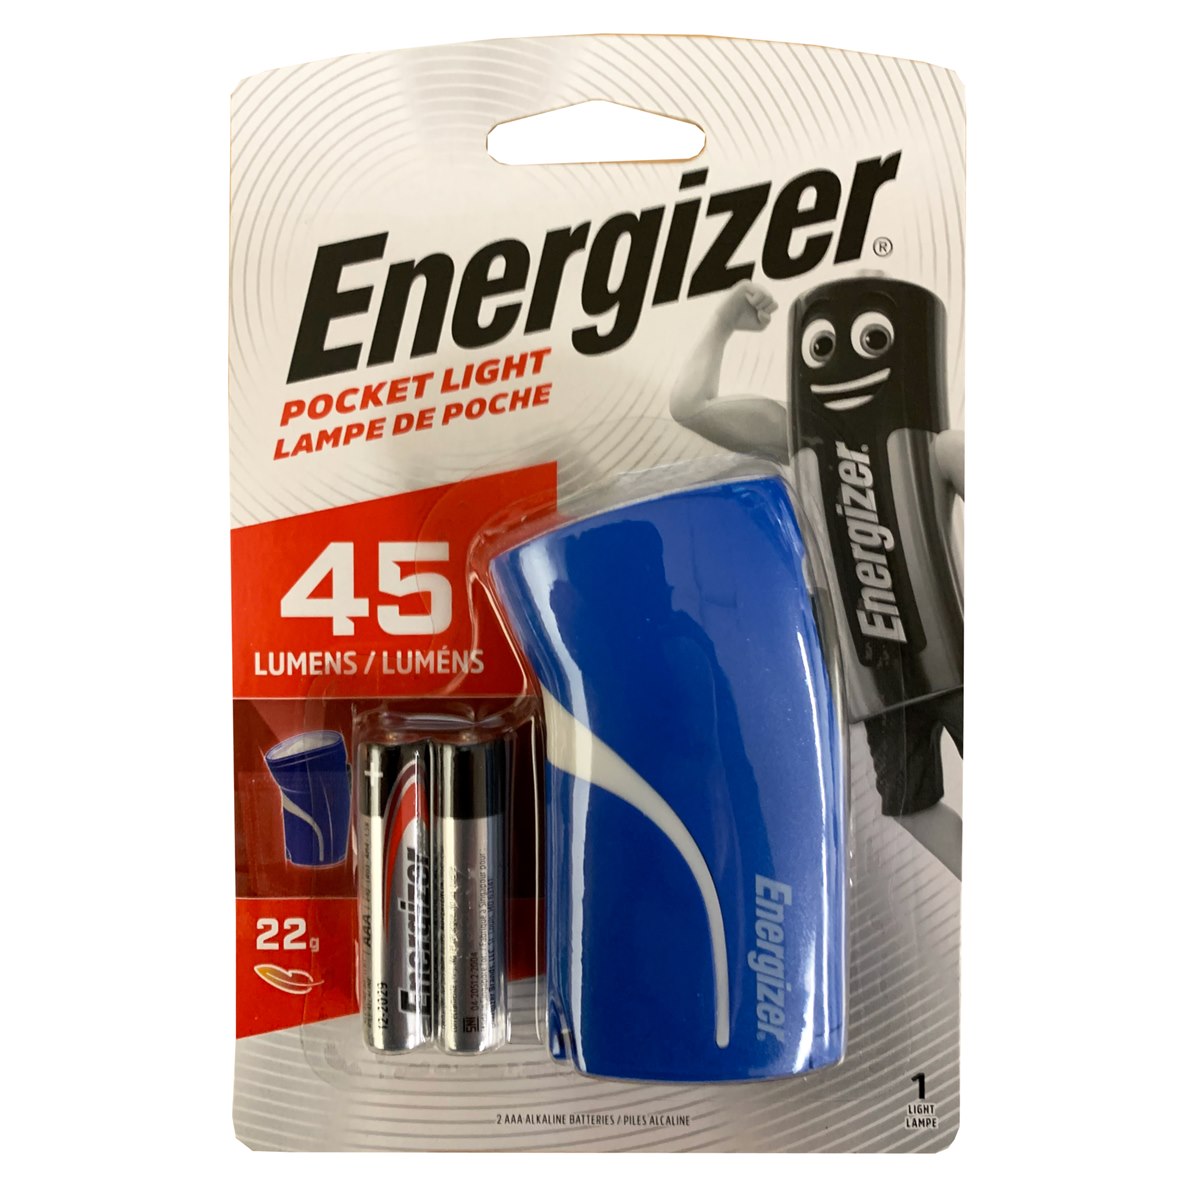 Energizer Pocket Light Torch